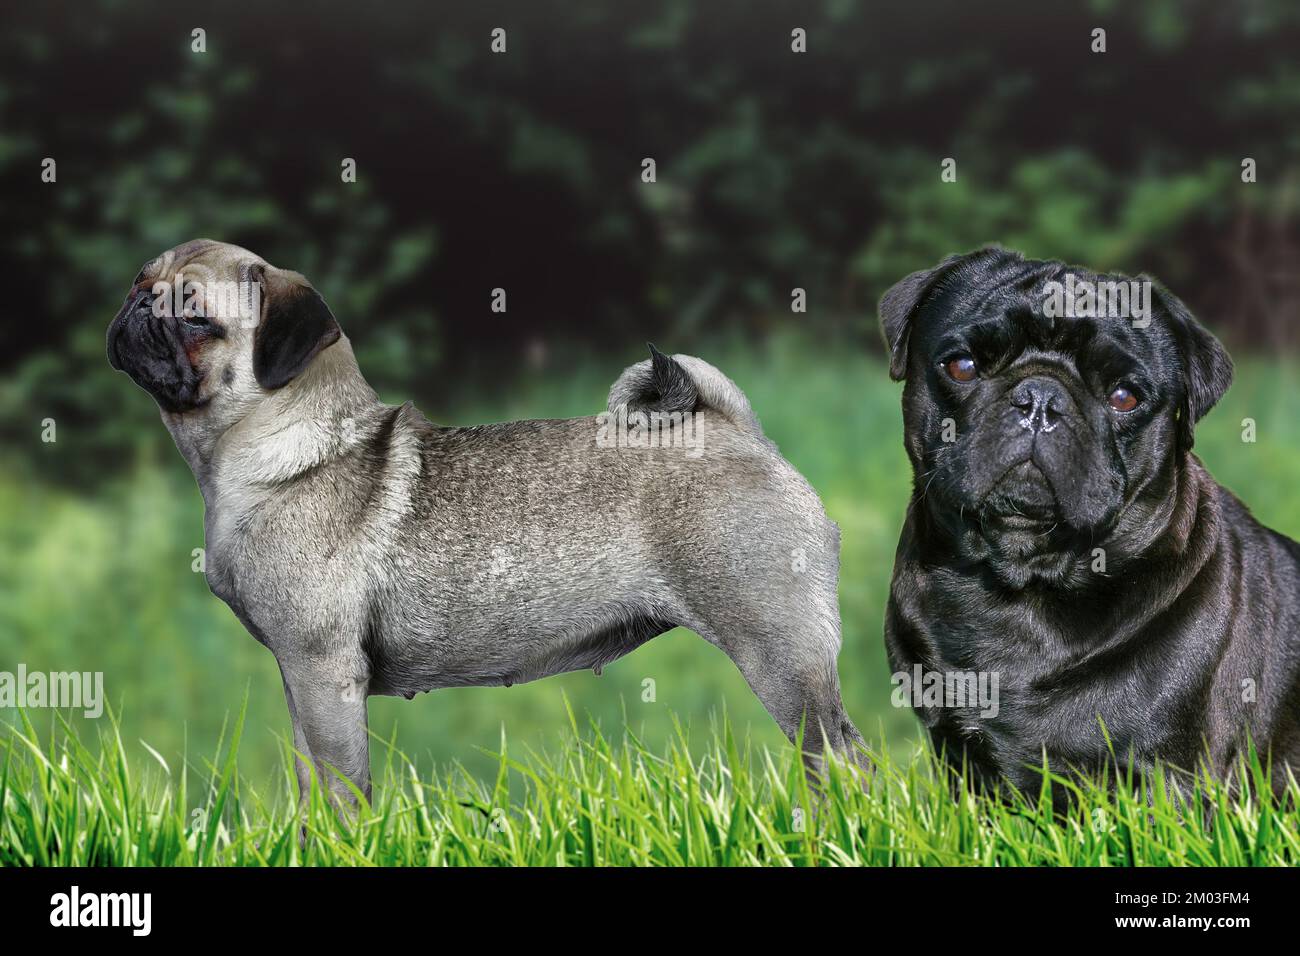 Il Pug è una razza di cane originaria della Cina, con caratteristiche fisicamente peculiari di un volto rugoso, corto-museroso e coda arricciata. Foto Stock